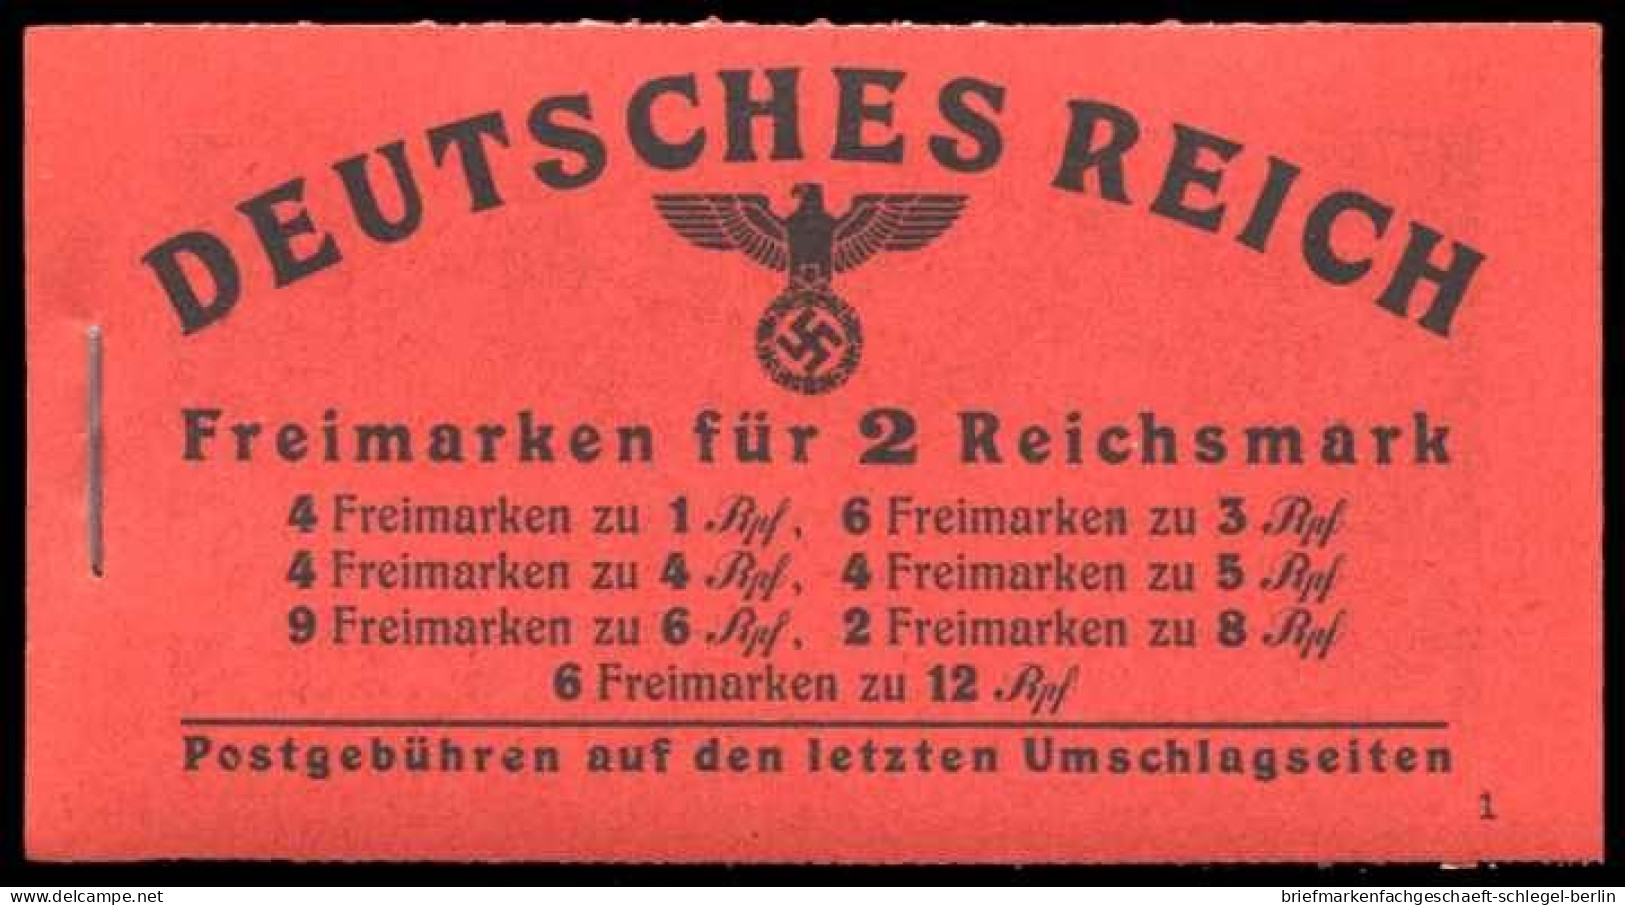 Deutsches Reich, 1941, MH 48.3, Postfrisch - Booklets